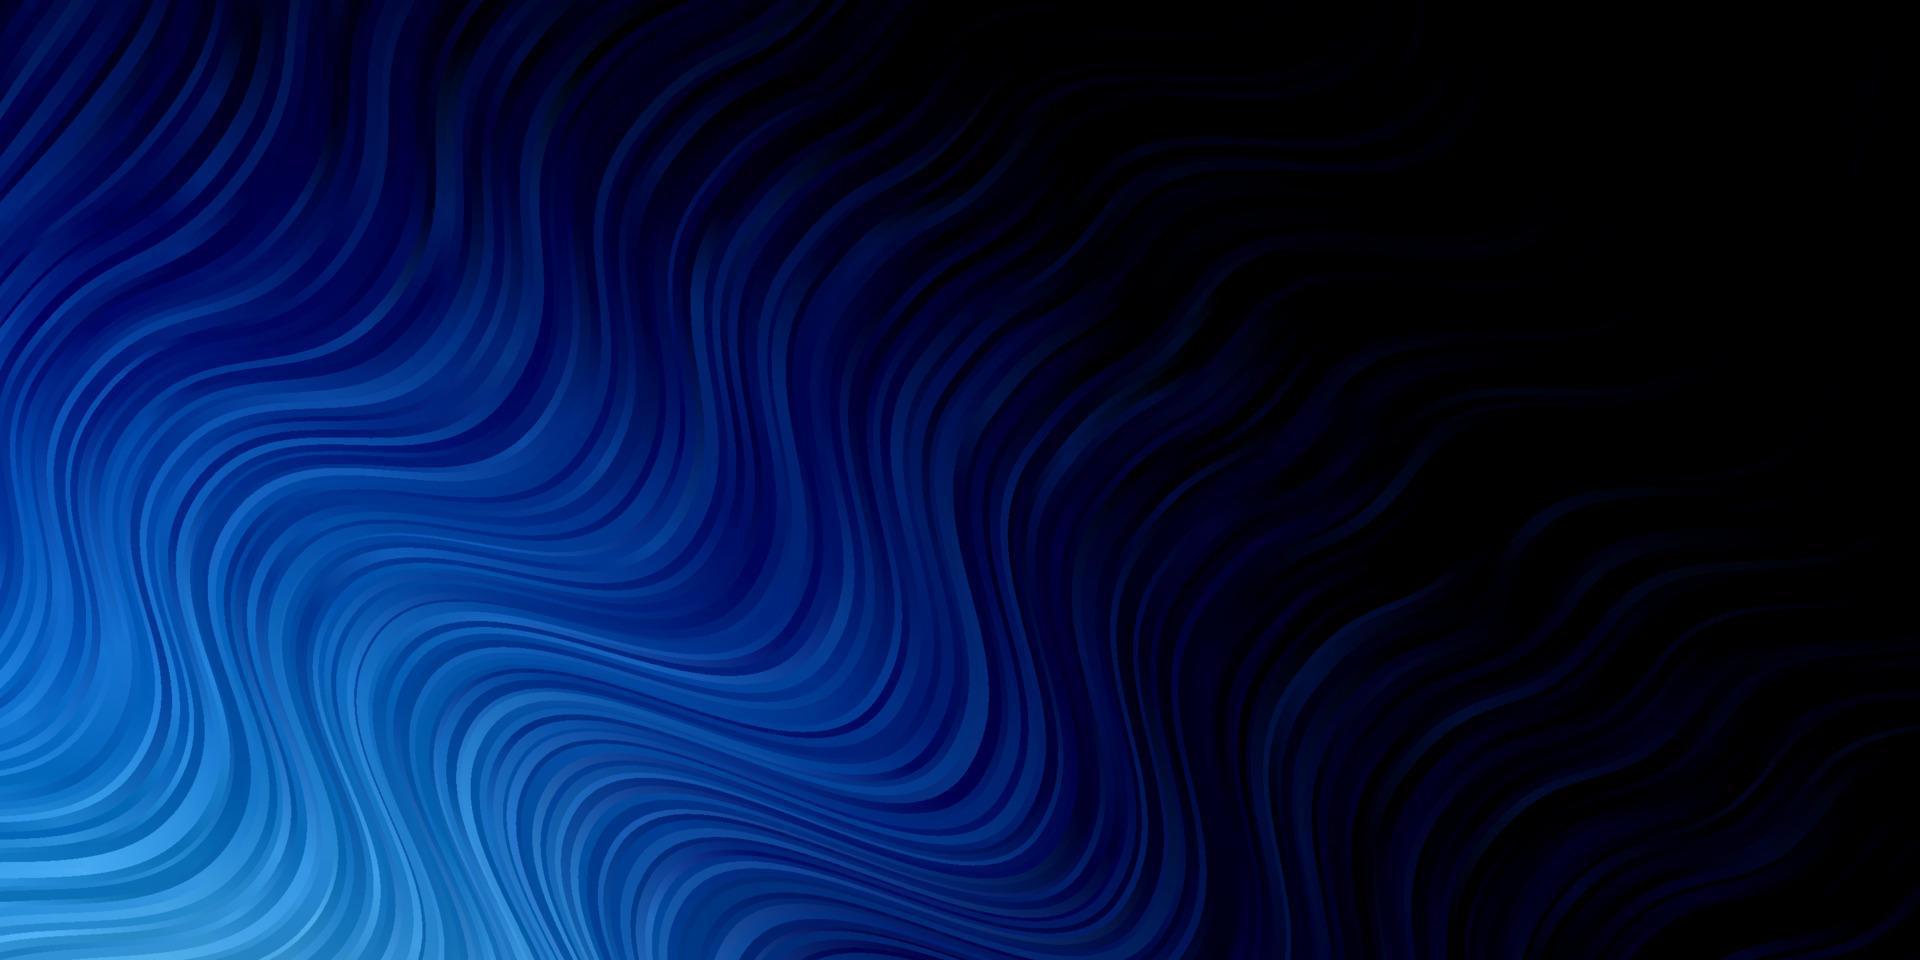 padrão de vetor azul escuro com linhas irônicas.